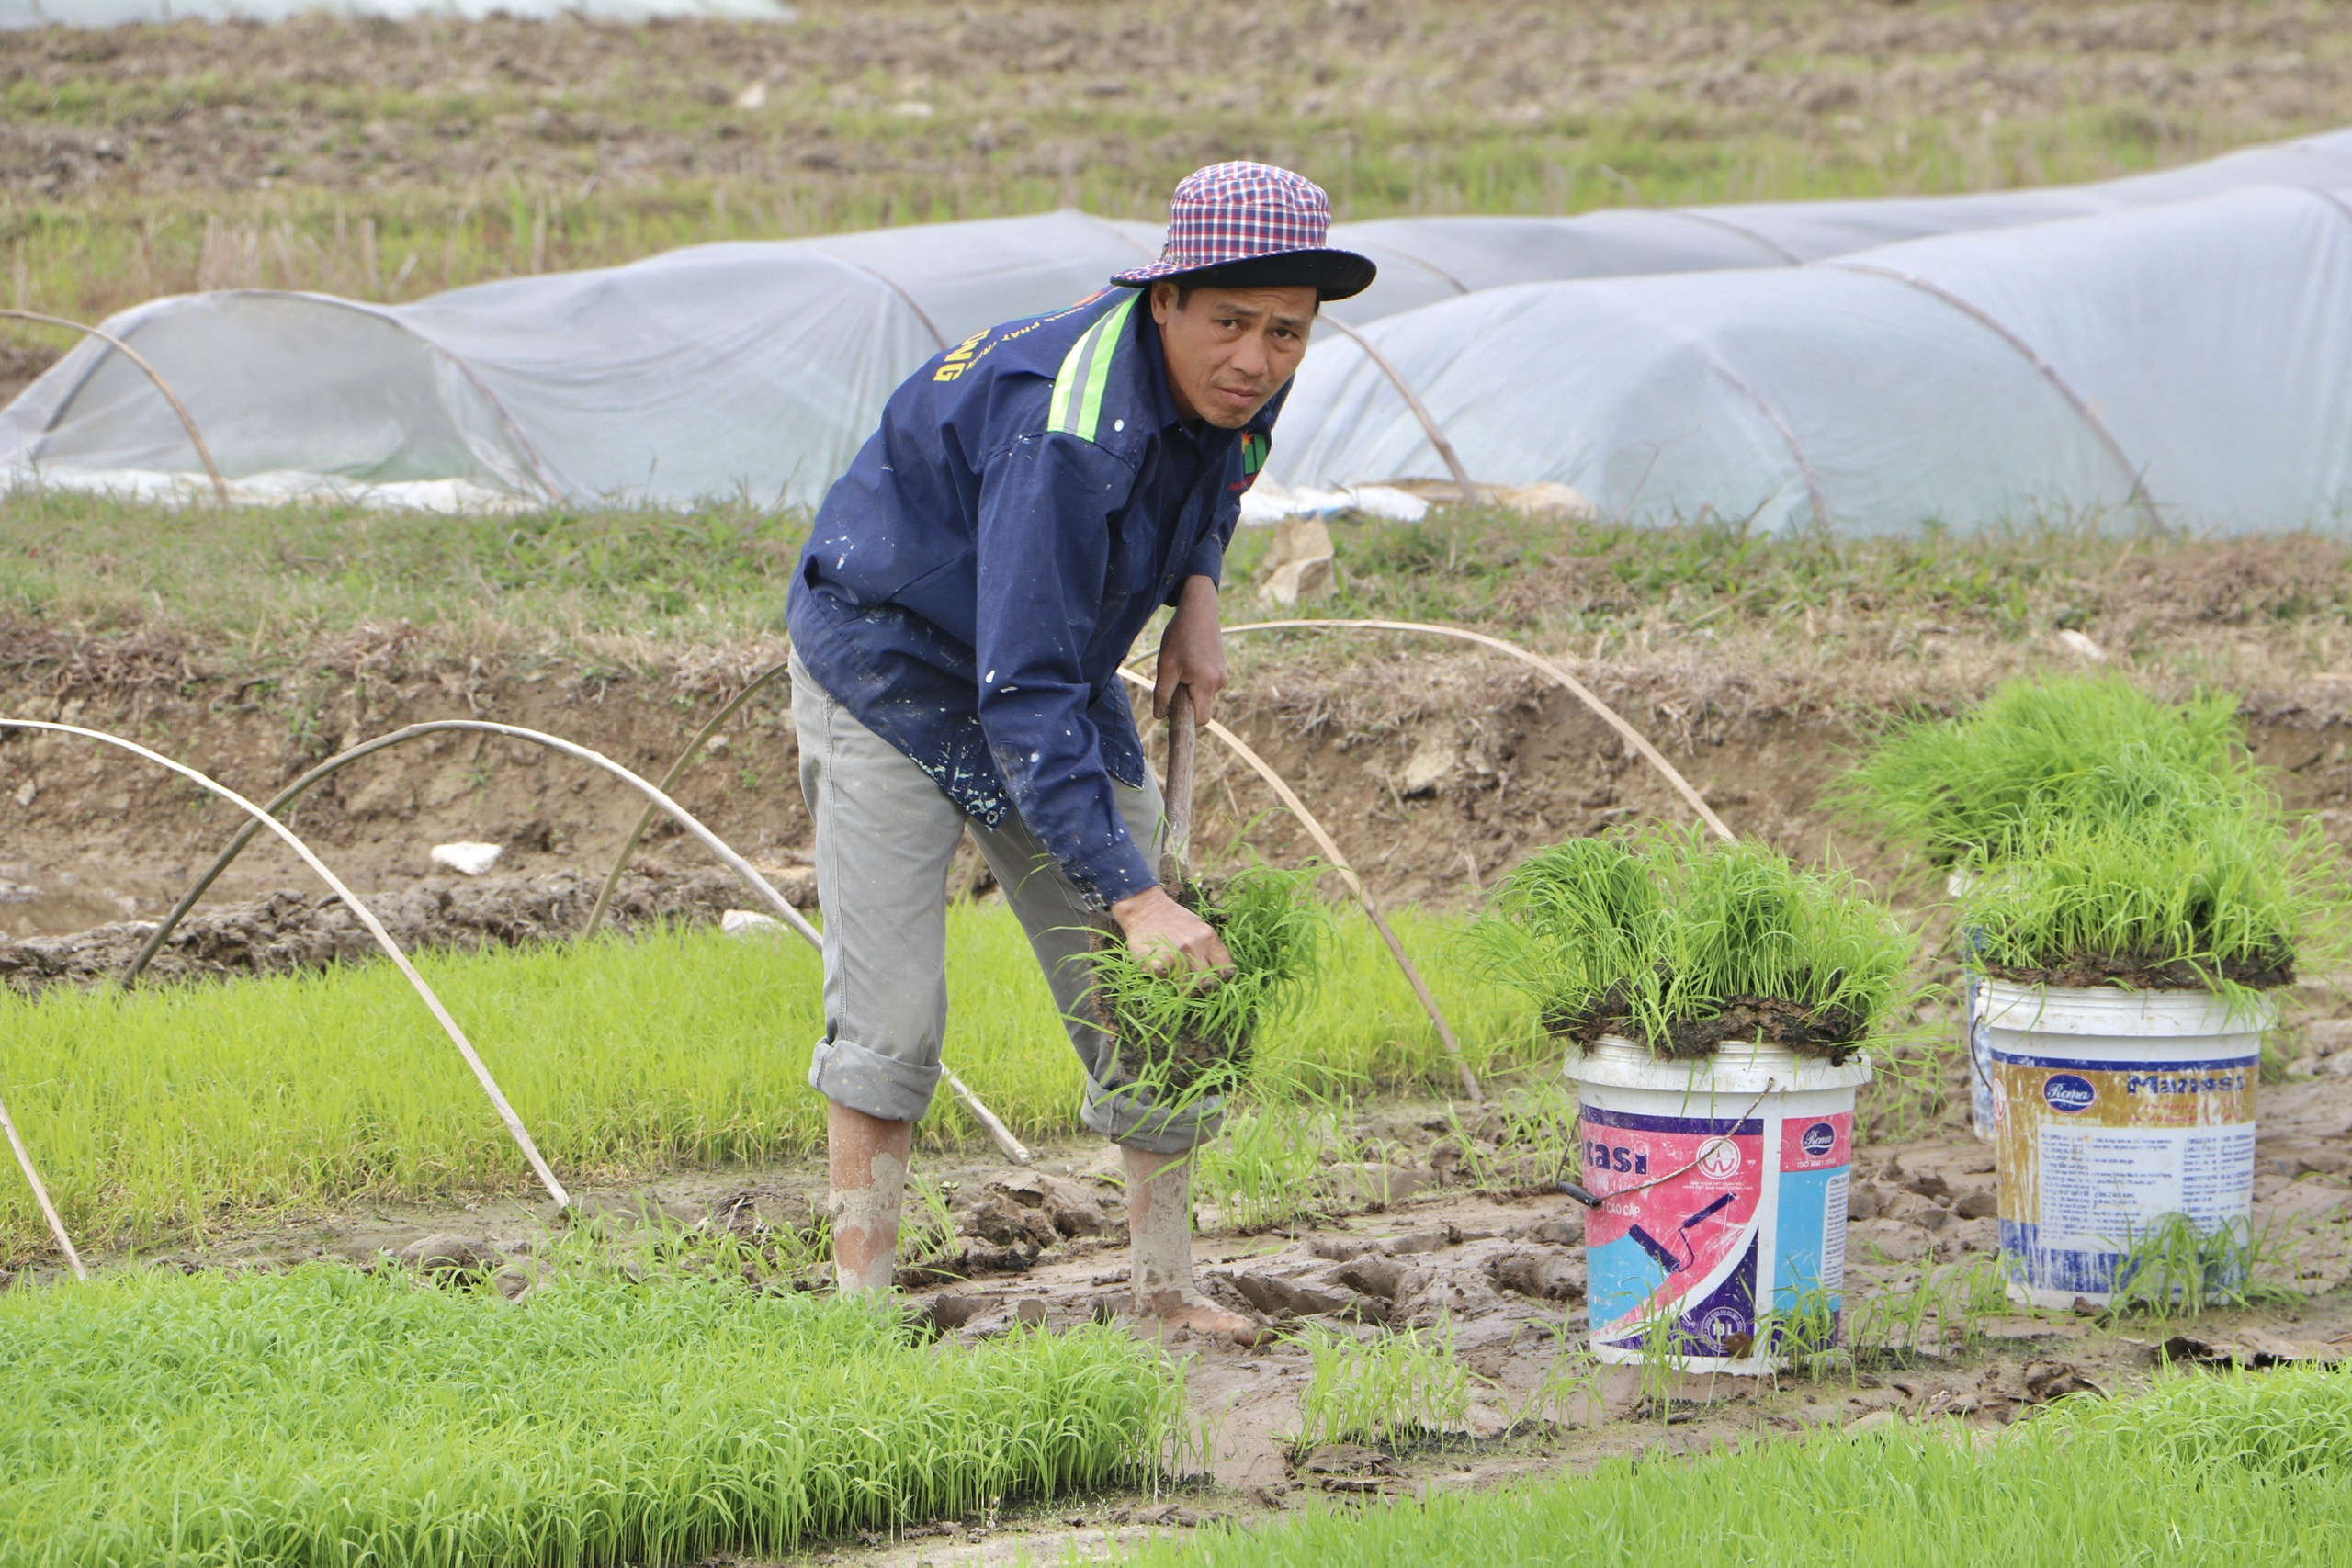 Sự chủ động, tích cực xuống đồng lao động sản xuất ngay từ những ngày đầu năm của nông dân làng Thái Bình đang mang đến những dự cảm tốt đẹp.